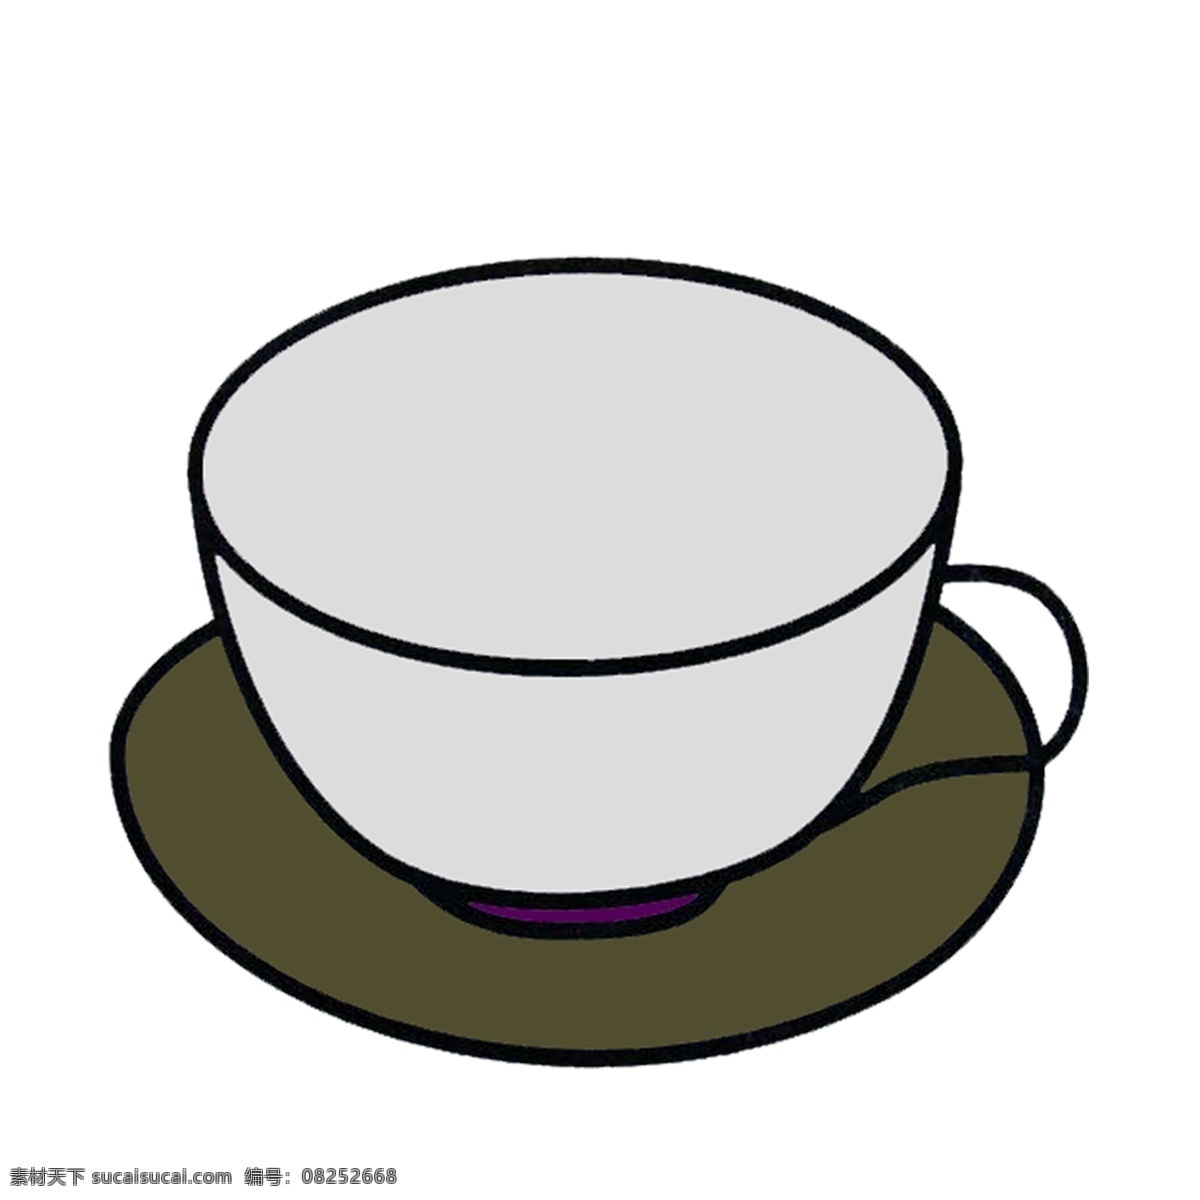 灰色 简约 咖啡杯 简单 简笔画 填充 可用于装饰 免抠 png格式 ppt背景 图标